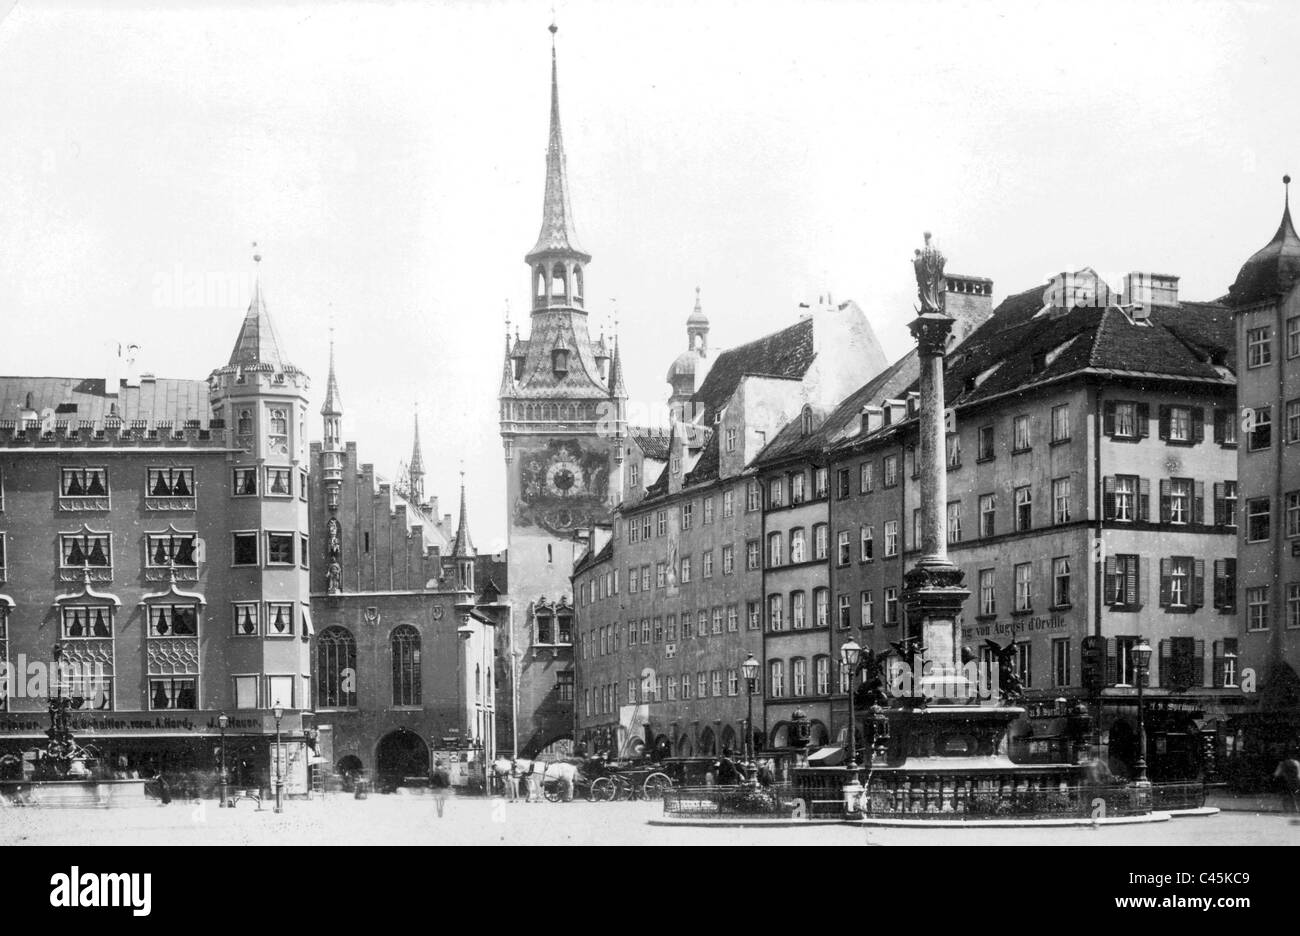 Historic Munich: Marienplatz in Munich Stock Photo